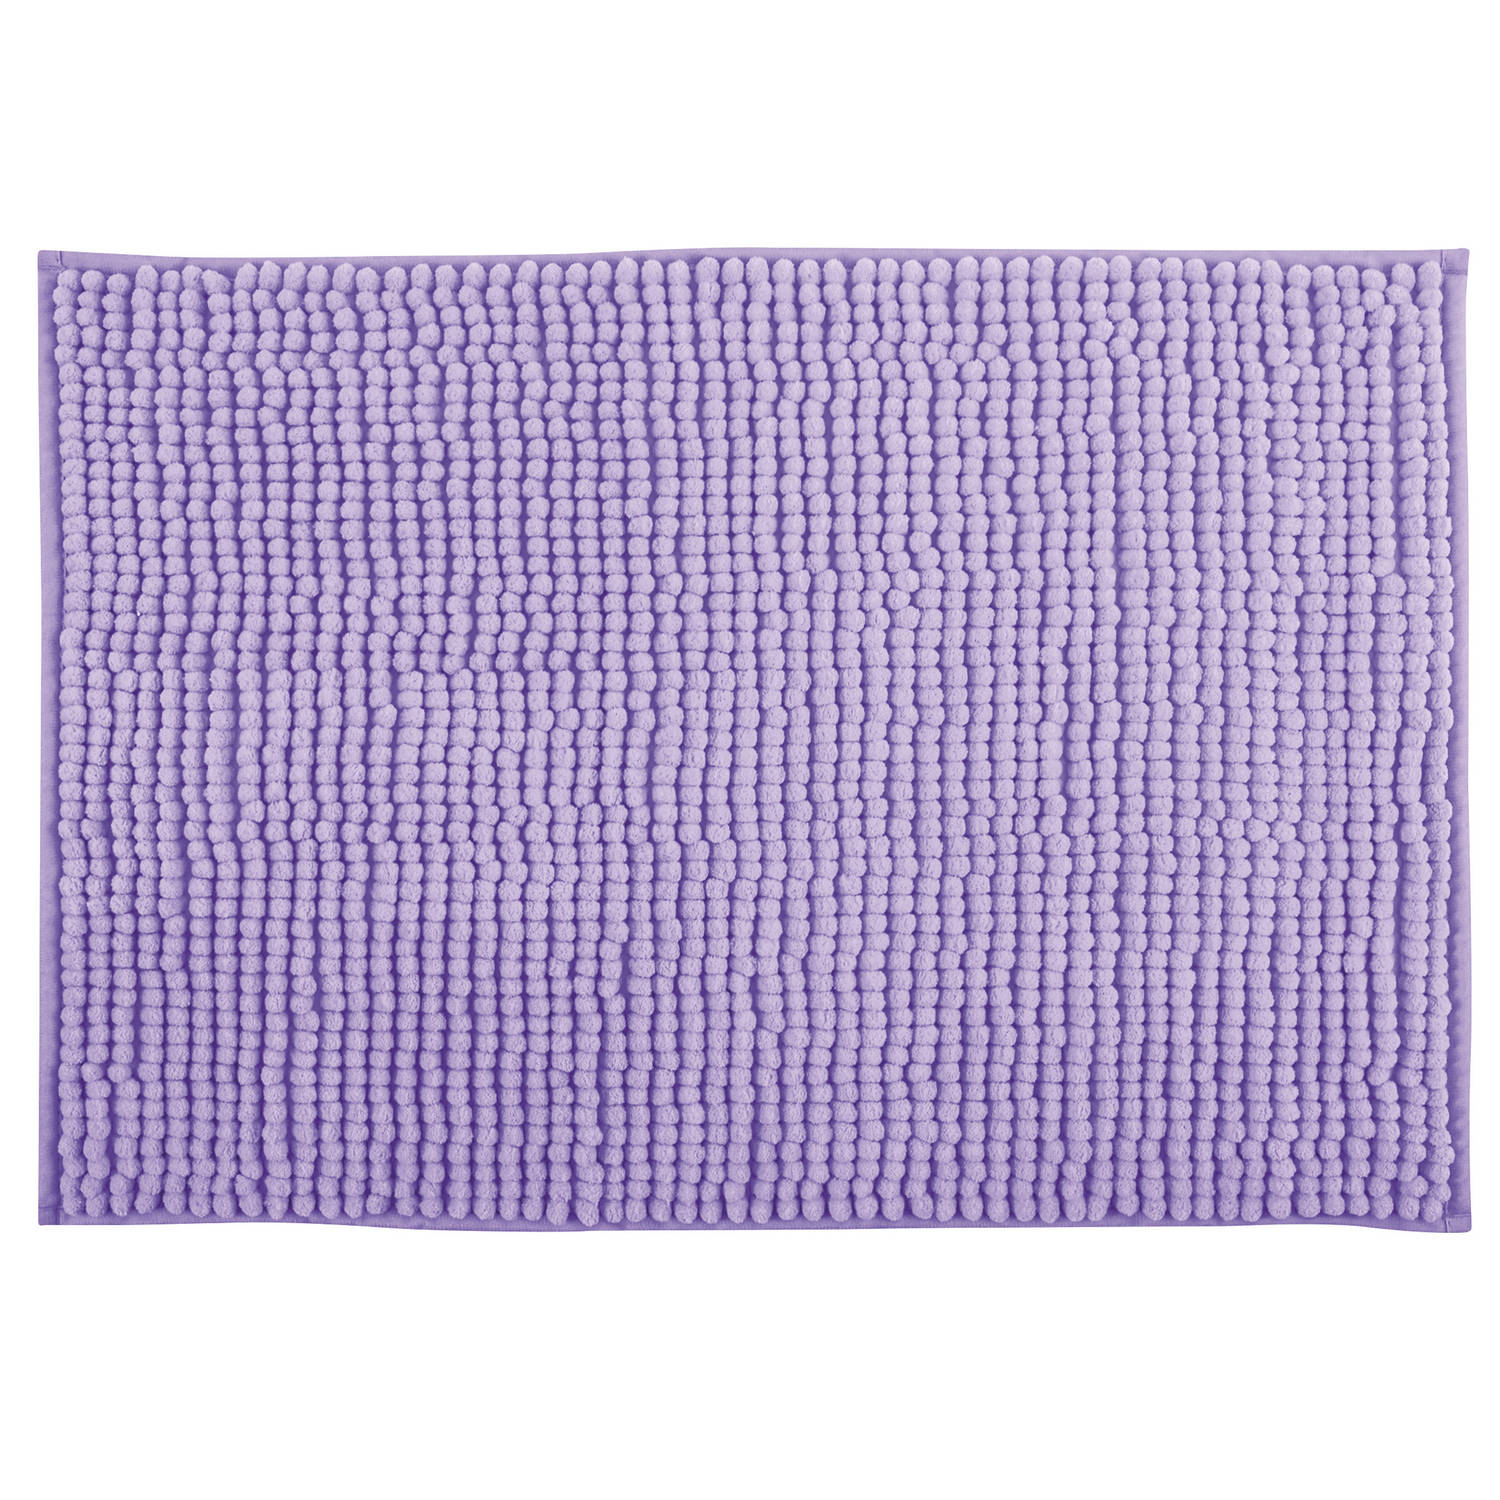 MSV Badkamerkleed/badmat tapijtje voor op de vloer - lila paars - 40 x 60 cm - Microvezel - anti slip